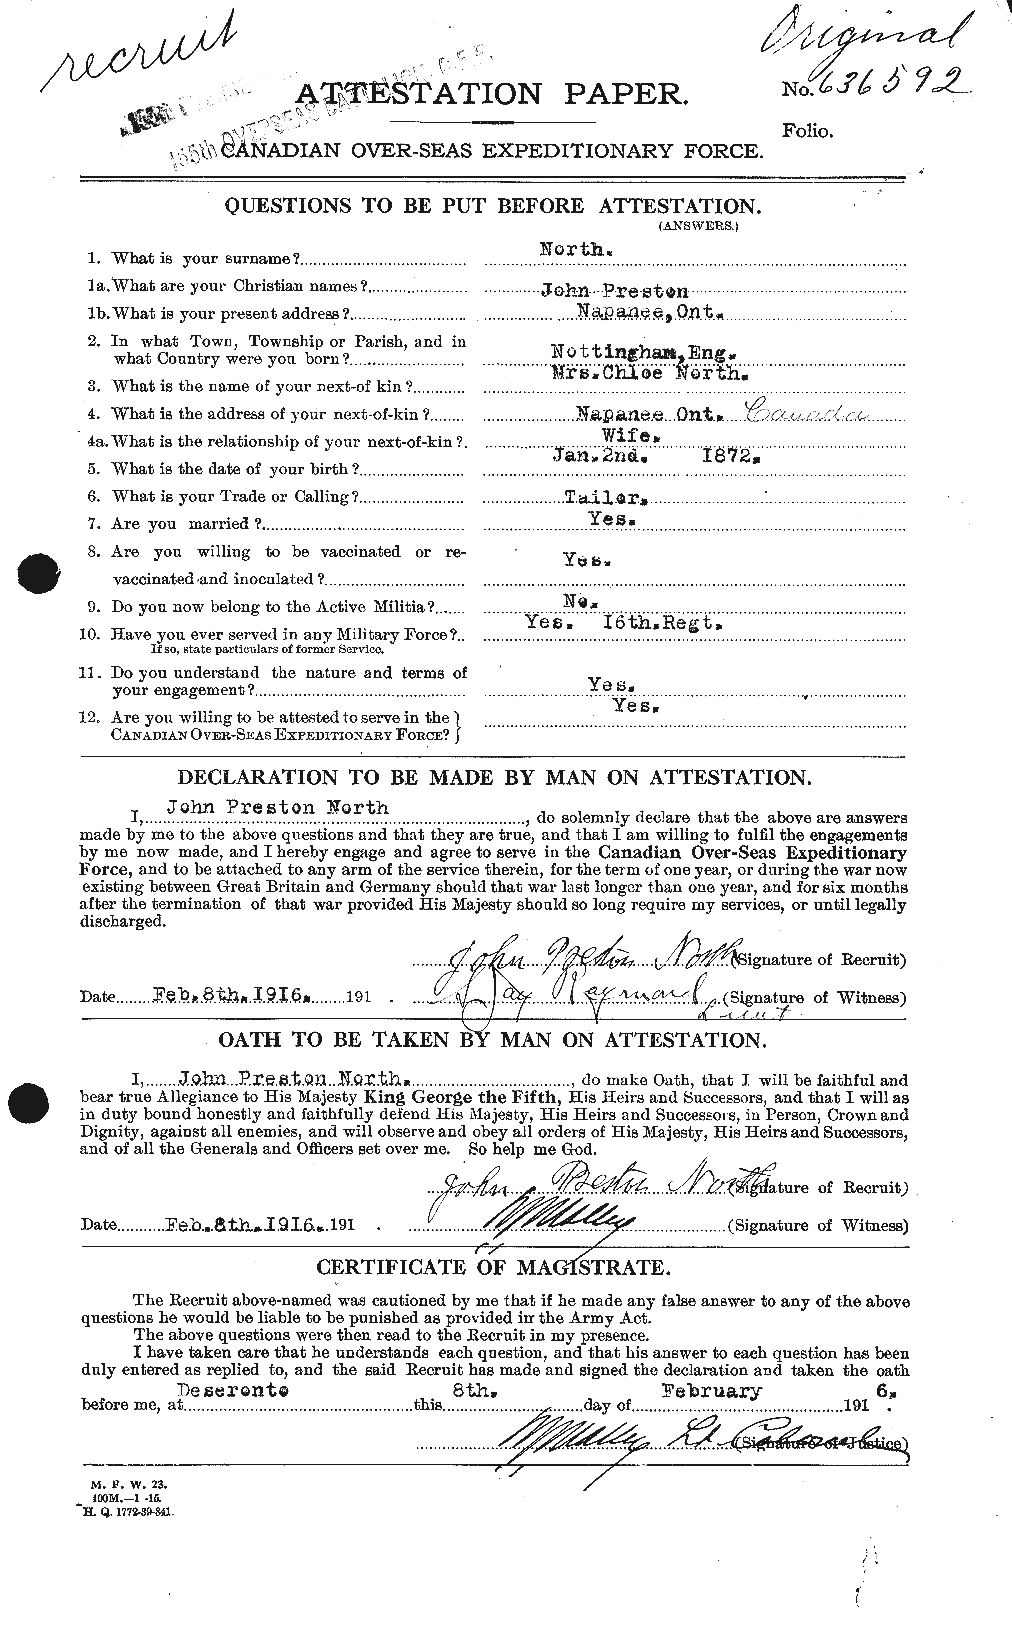 Dossiers du Personnel de la Première Guerre mondiale - CEC 549914a